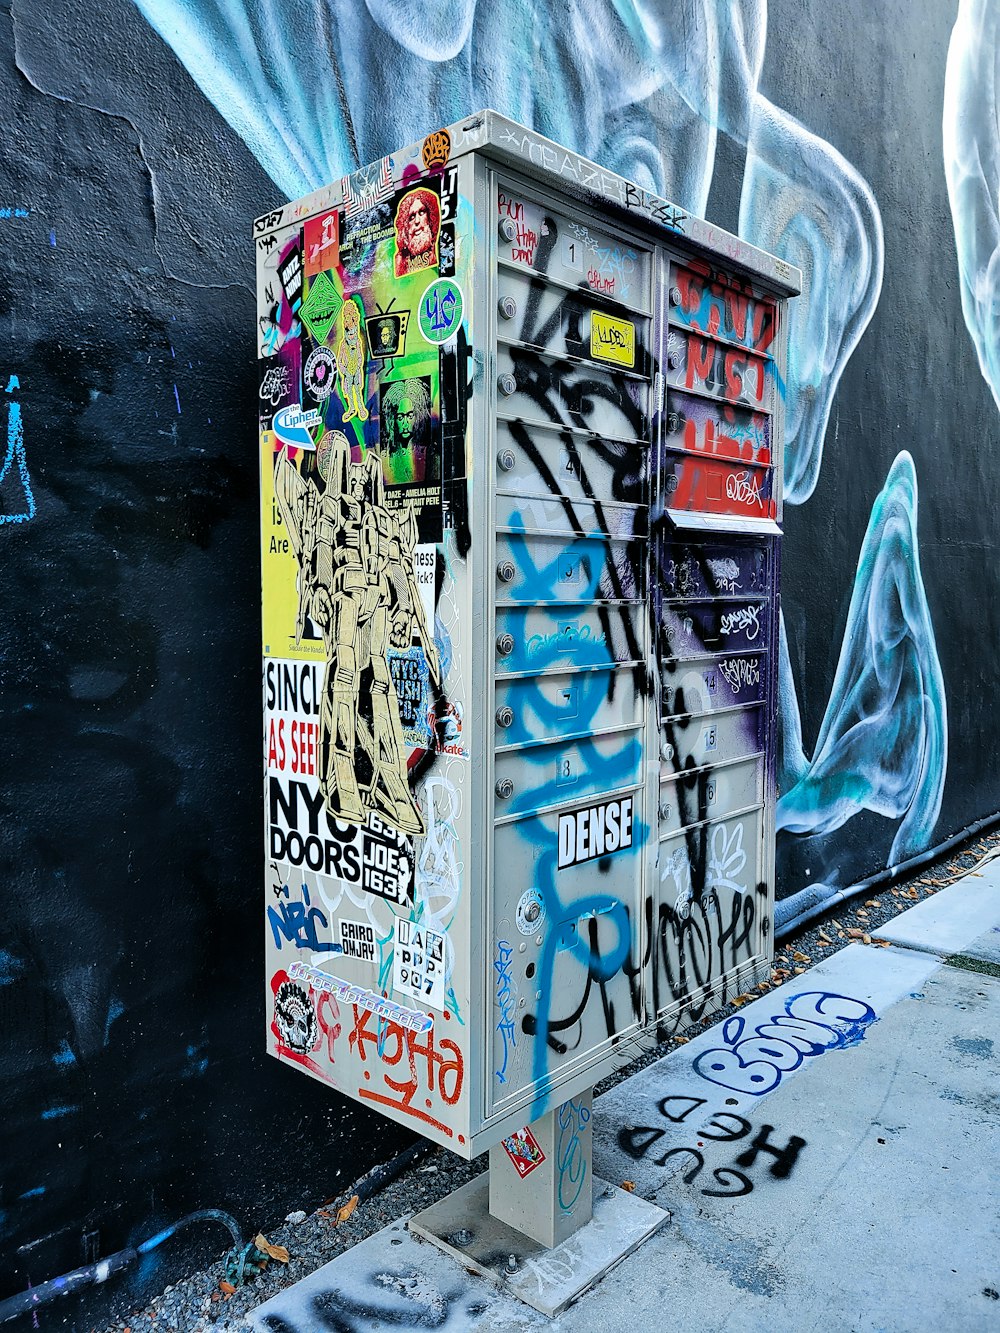 a large box with graffiti on it